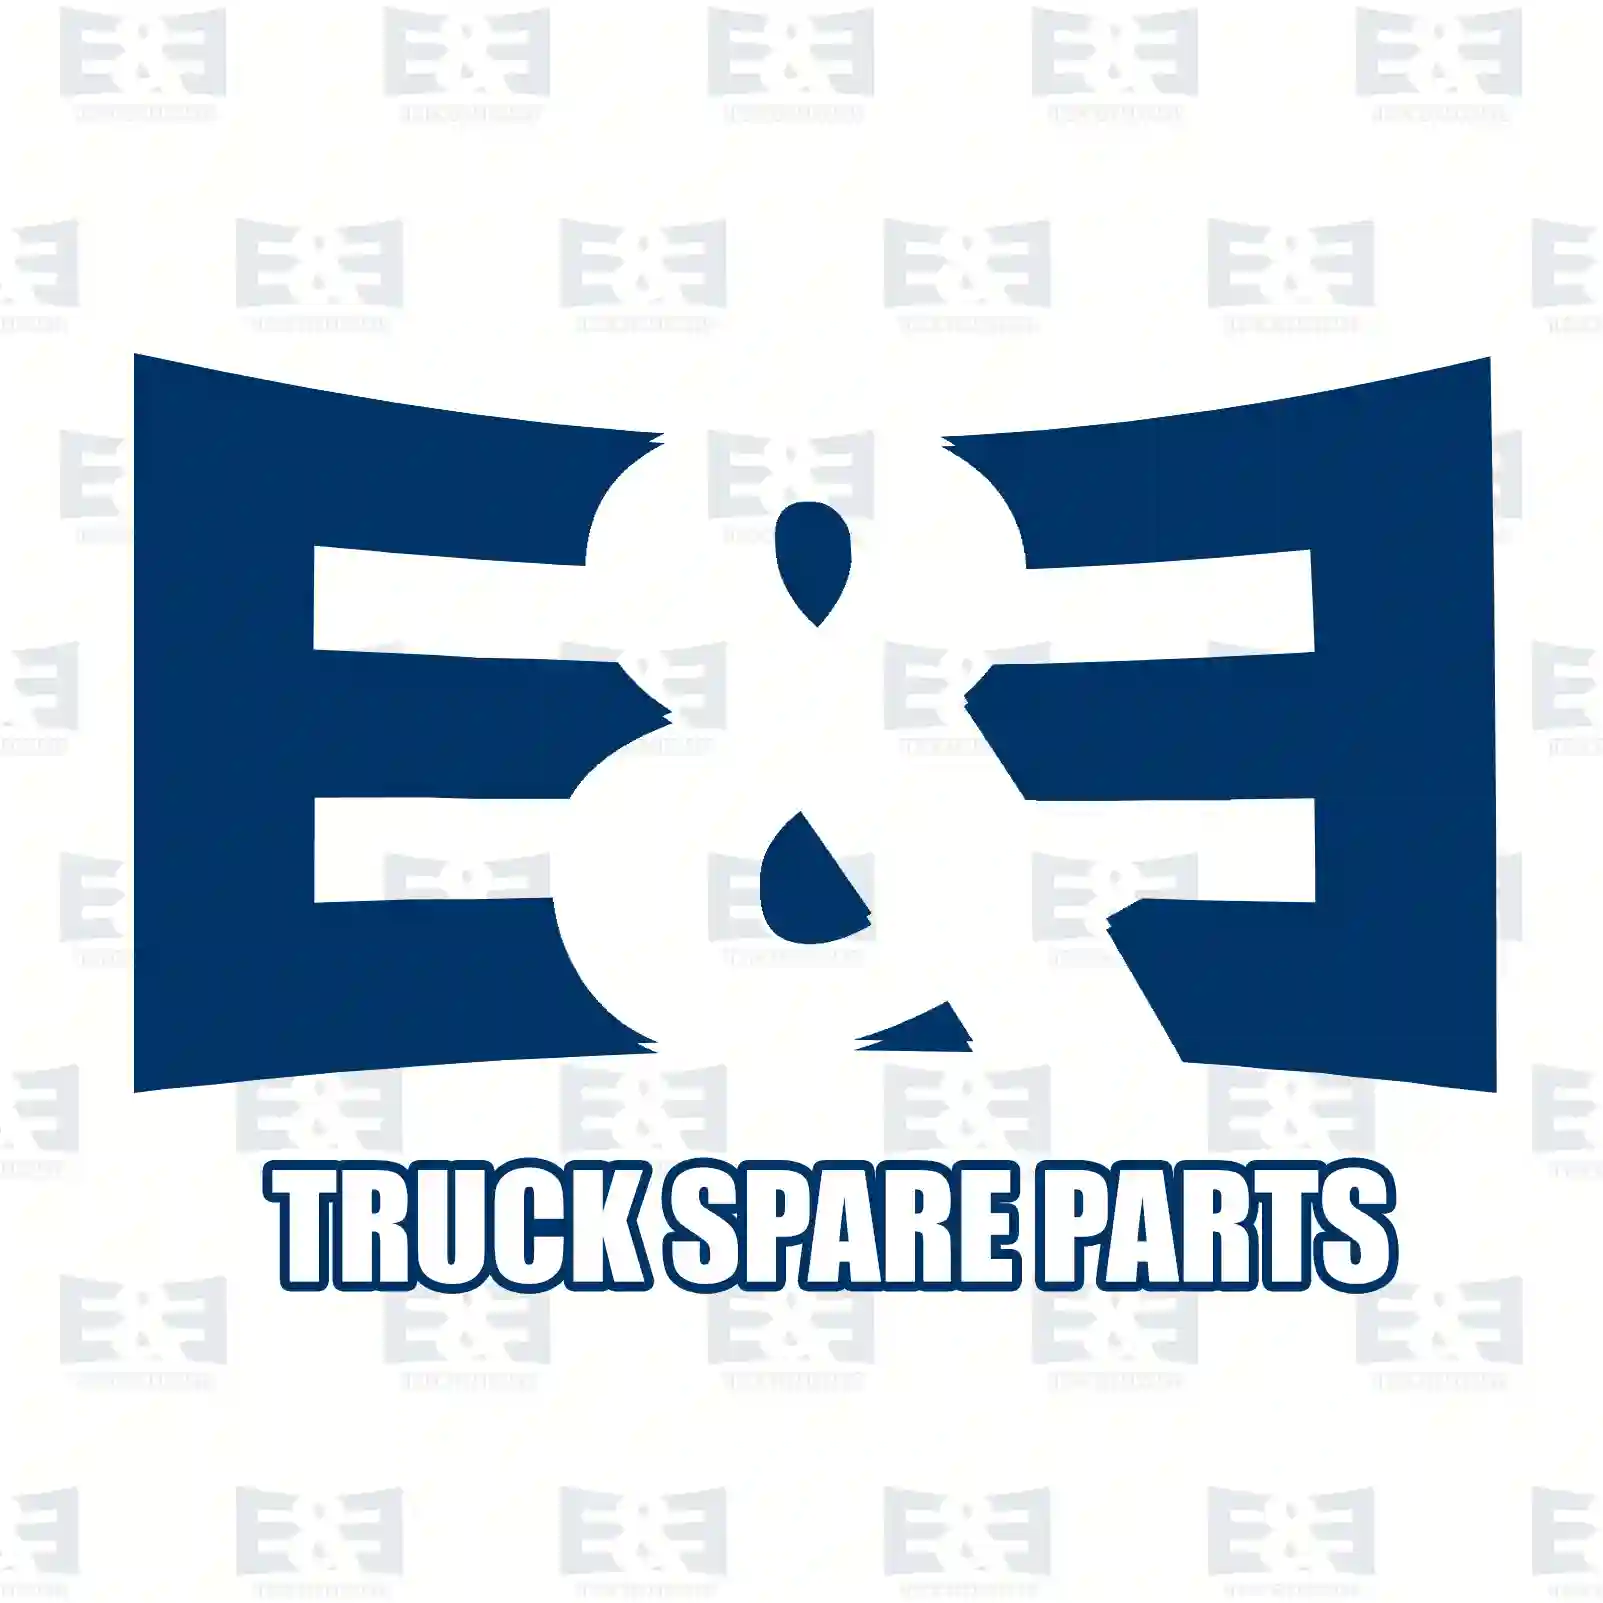 Wiper motor, 2E2292399, 1392755, 1858661, 2348384, ZG20199-0008 ||  2E2292399 E&E Truck Spare Parts | Truck Spare Parts, Auotomotive Spare Parts Wiper motor, 2E2292399, 1392755, 1858661, 2348384, ZG20199-0008 ||  2E2292399 E&E Truck Spare Parts | Truck Spare Parts, Auotomotive Spare Parts